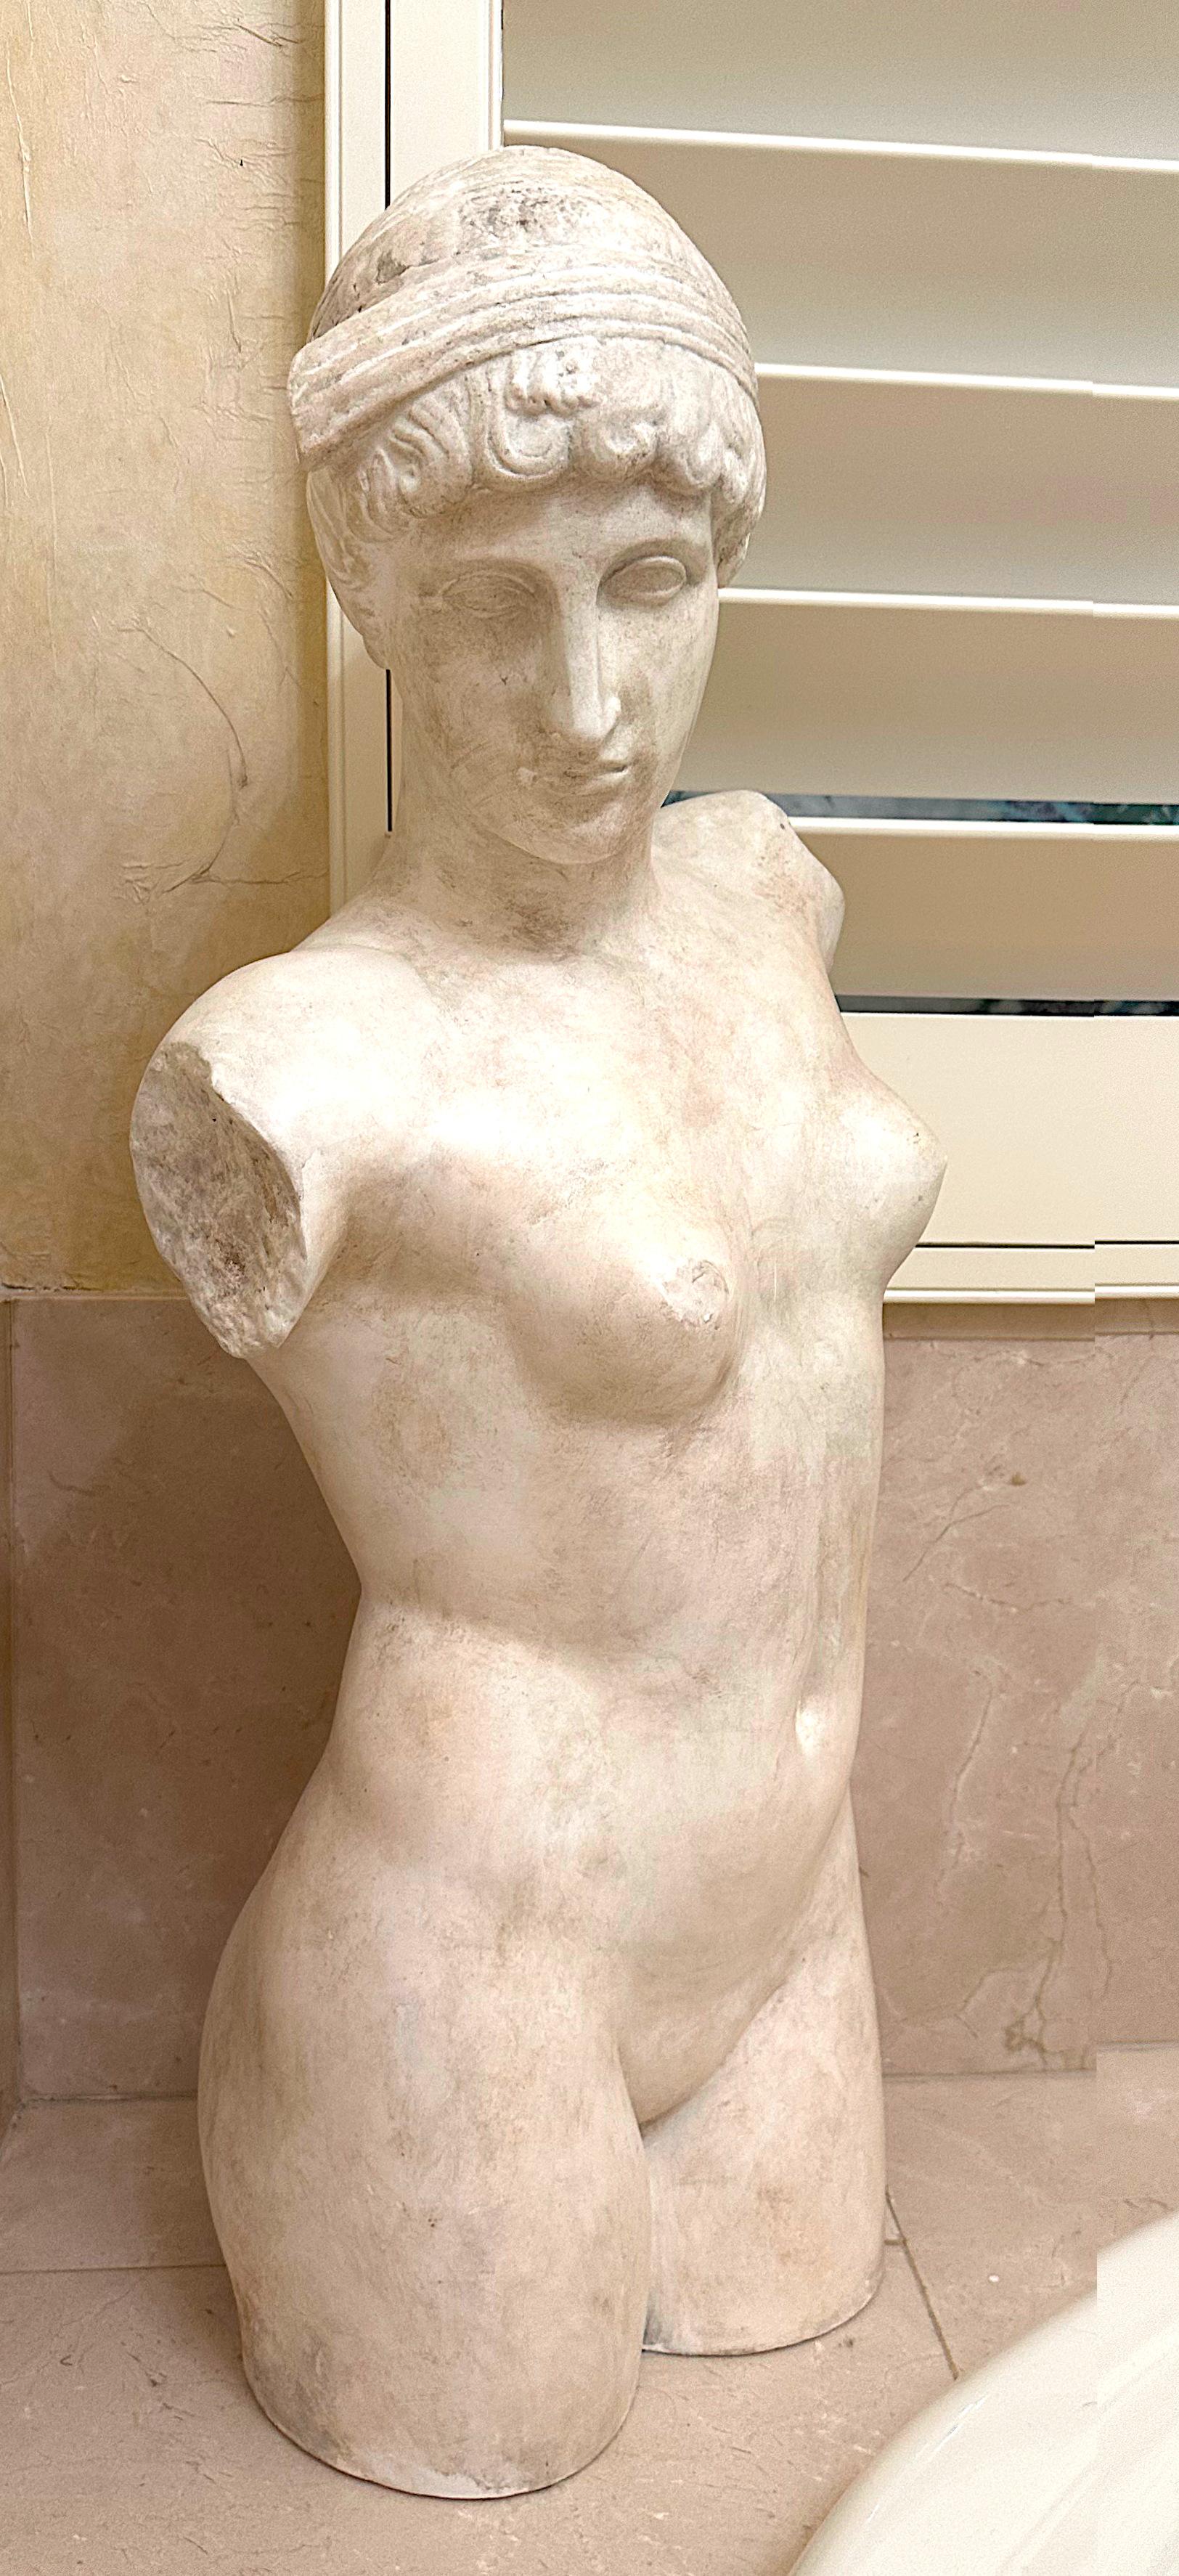 Torse de Vénus en faux marbre
La composition est un torse nu féminin moulé dans le style de la Grèce antique.
Hauteur 96,52 cm (approx.)